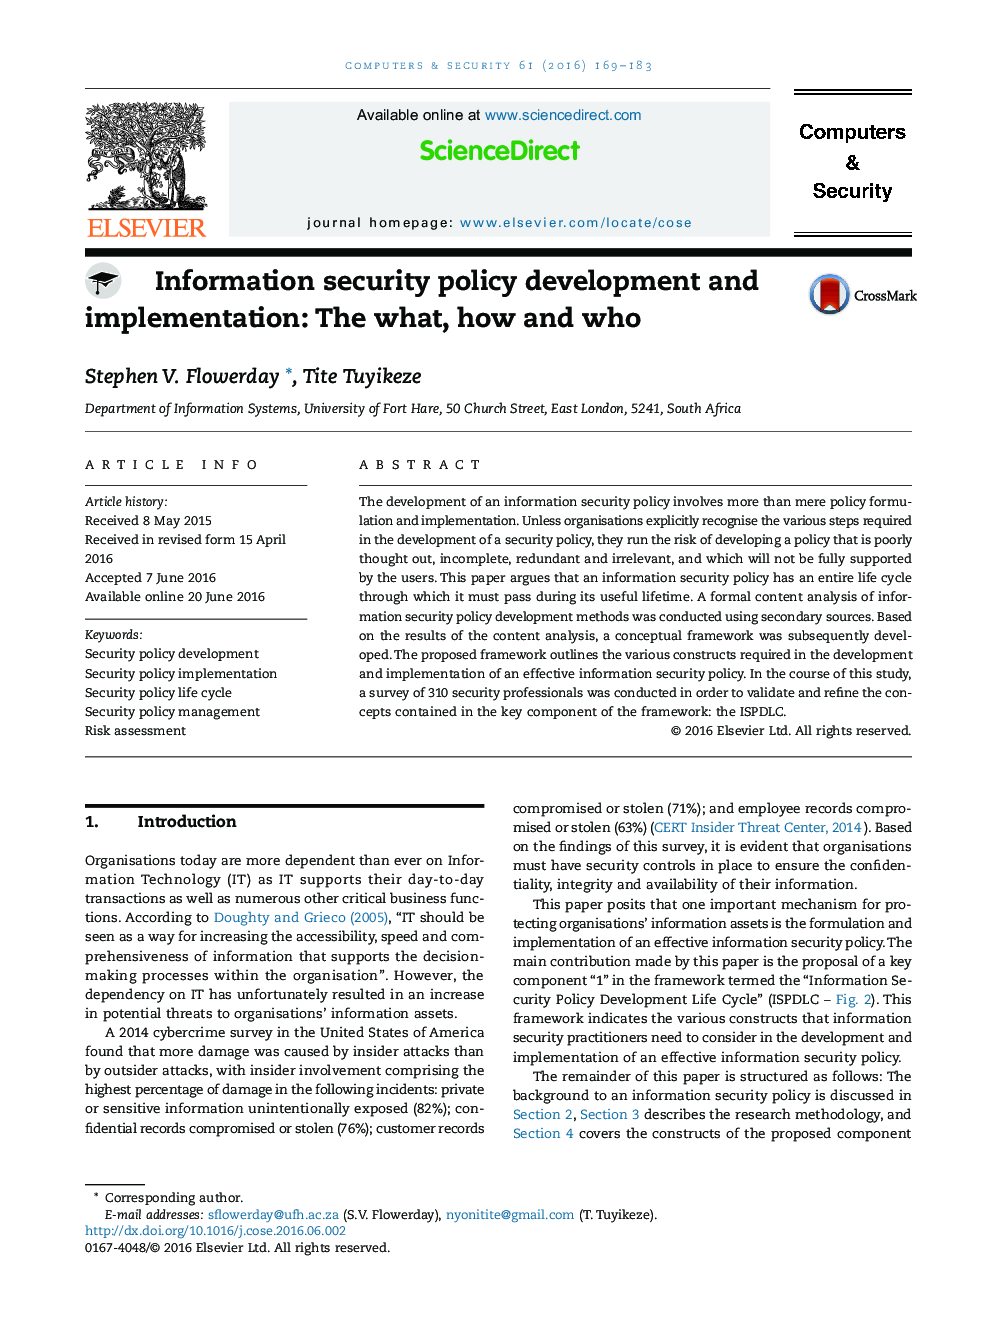 توسعه و اجرای سیاست های امنیتی اطلاعات: چه، چه و چه کسی 